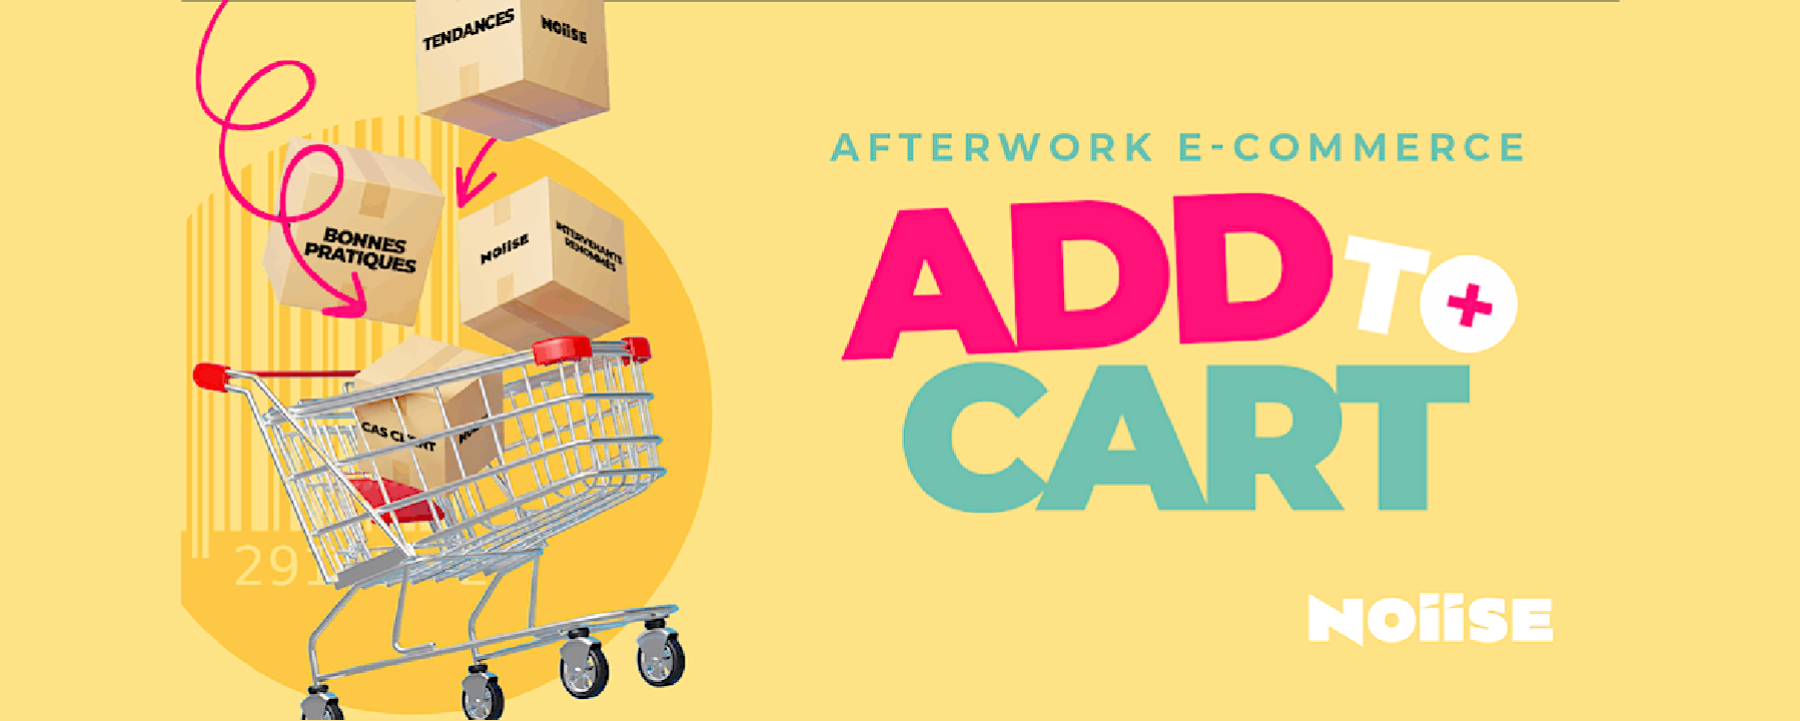 Add to Cart - L'afterwork e-commerce de NOIISE